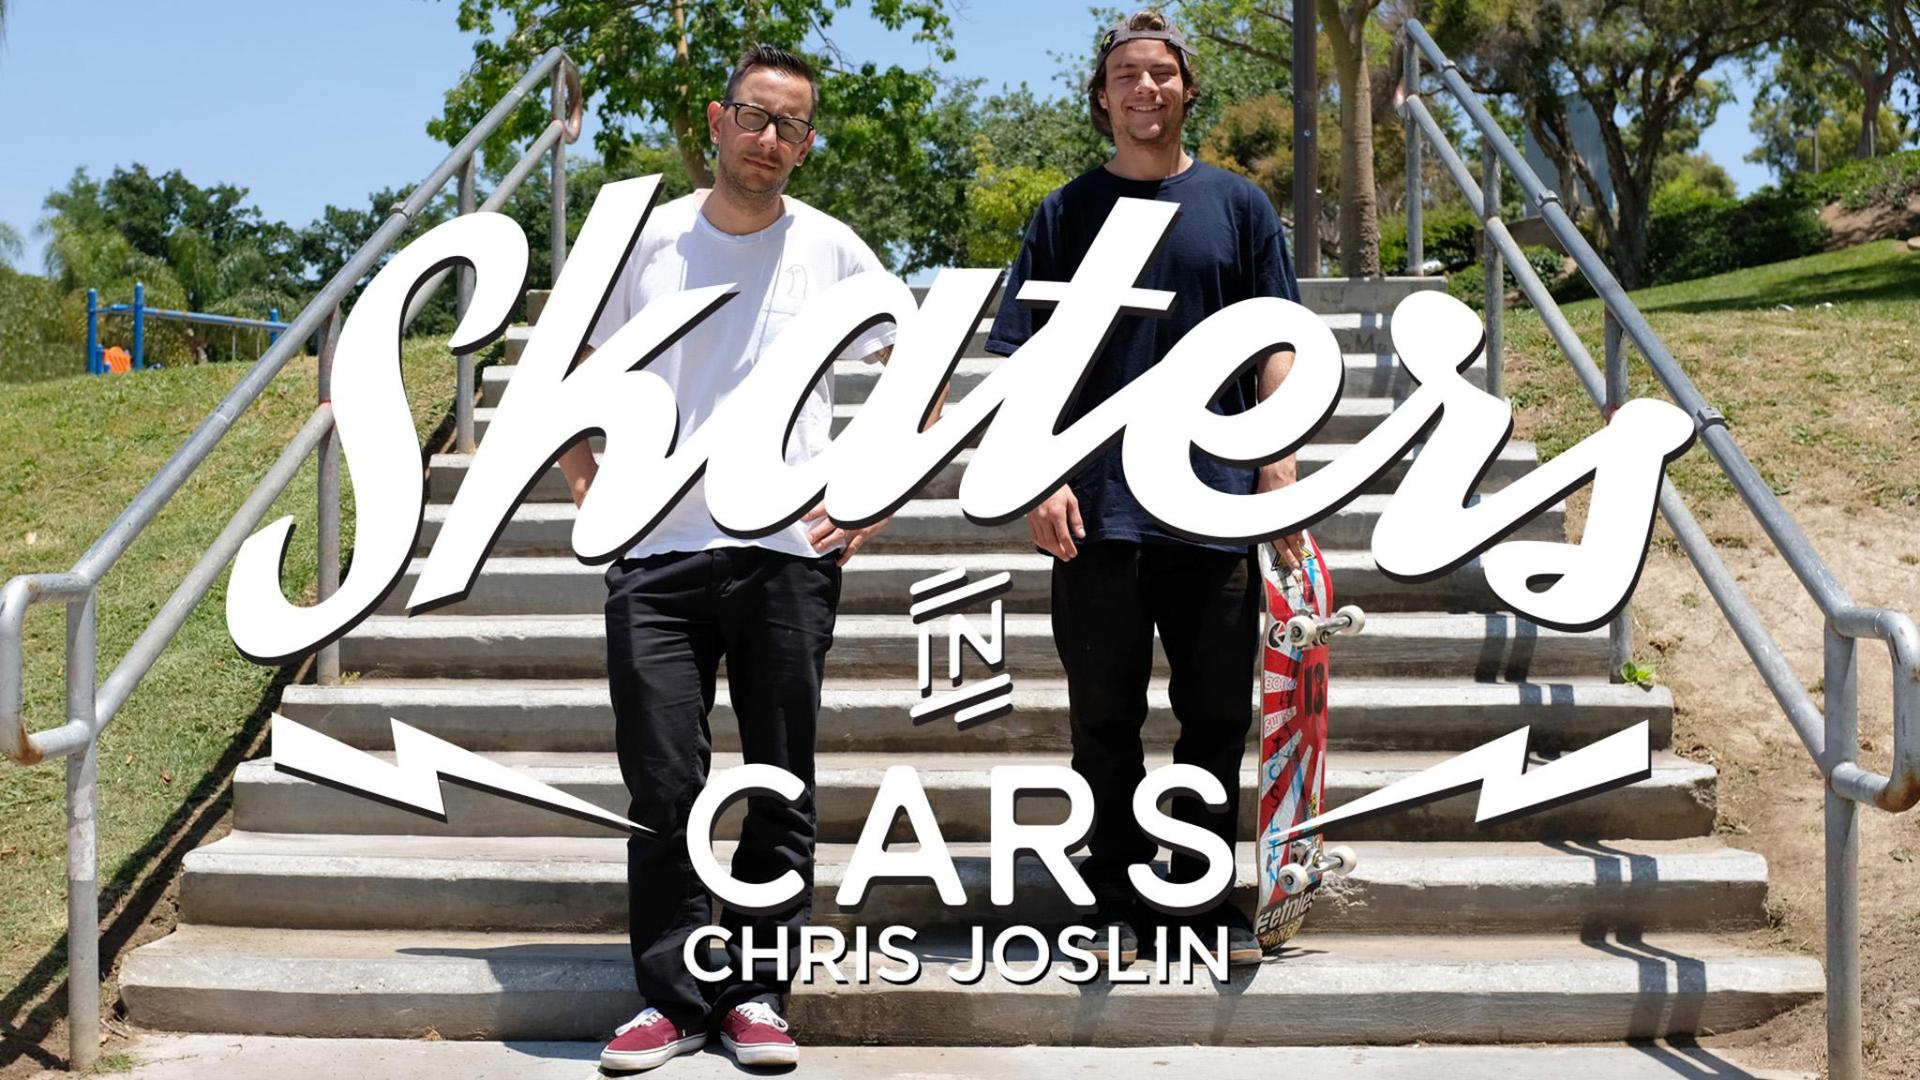 Skaters in Cars Looking at Spots: Chris Joslin